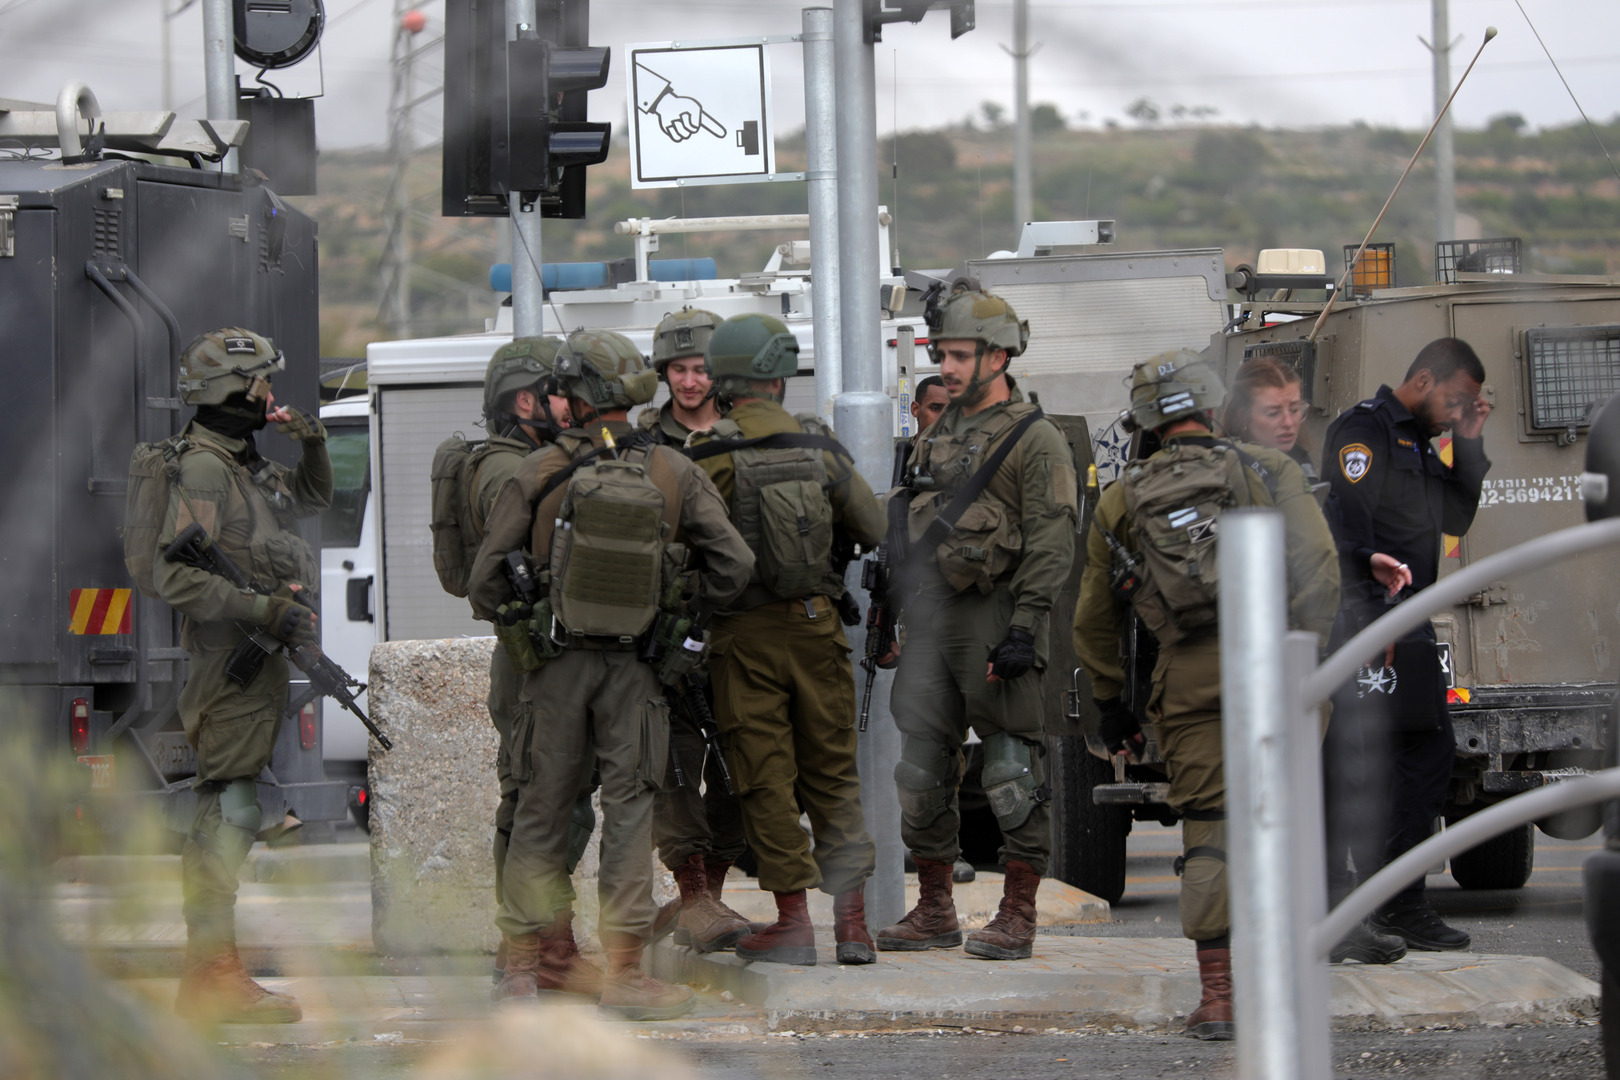 الجيش الإسرائيلي يشن حملة اقتحامات واعتقالات في الضفة الغربية (فيديوهات)